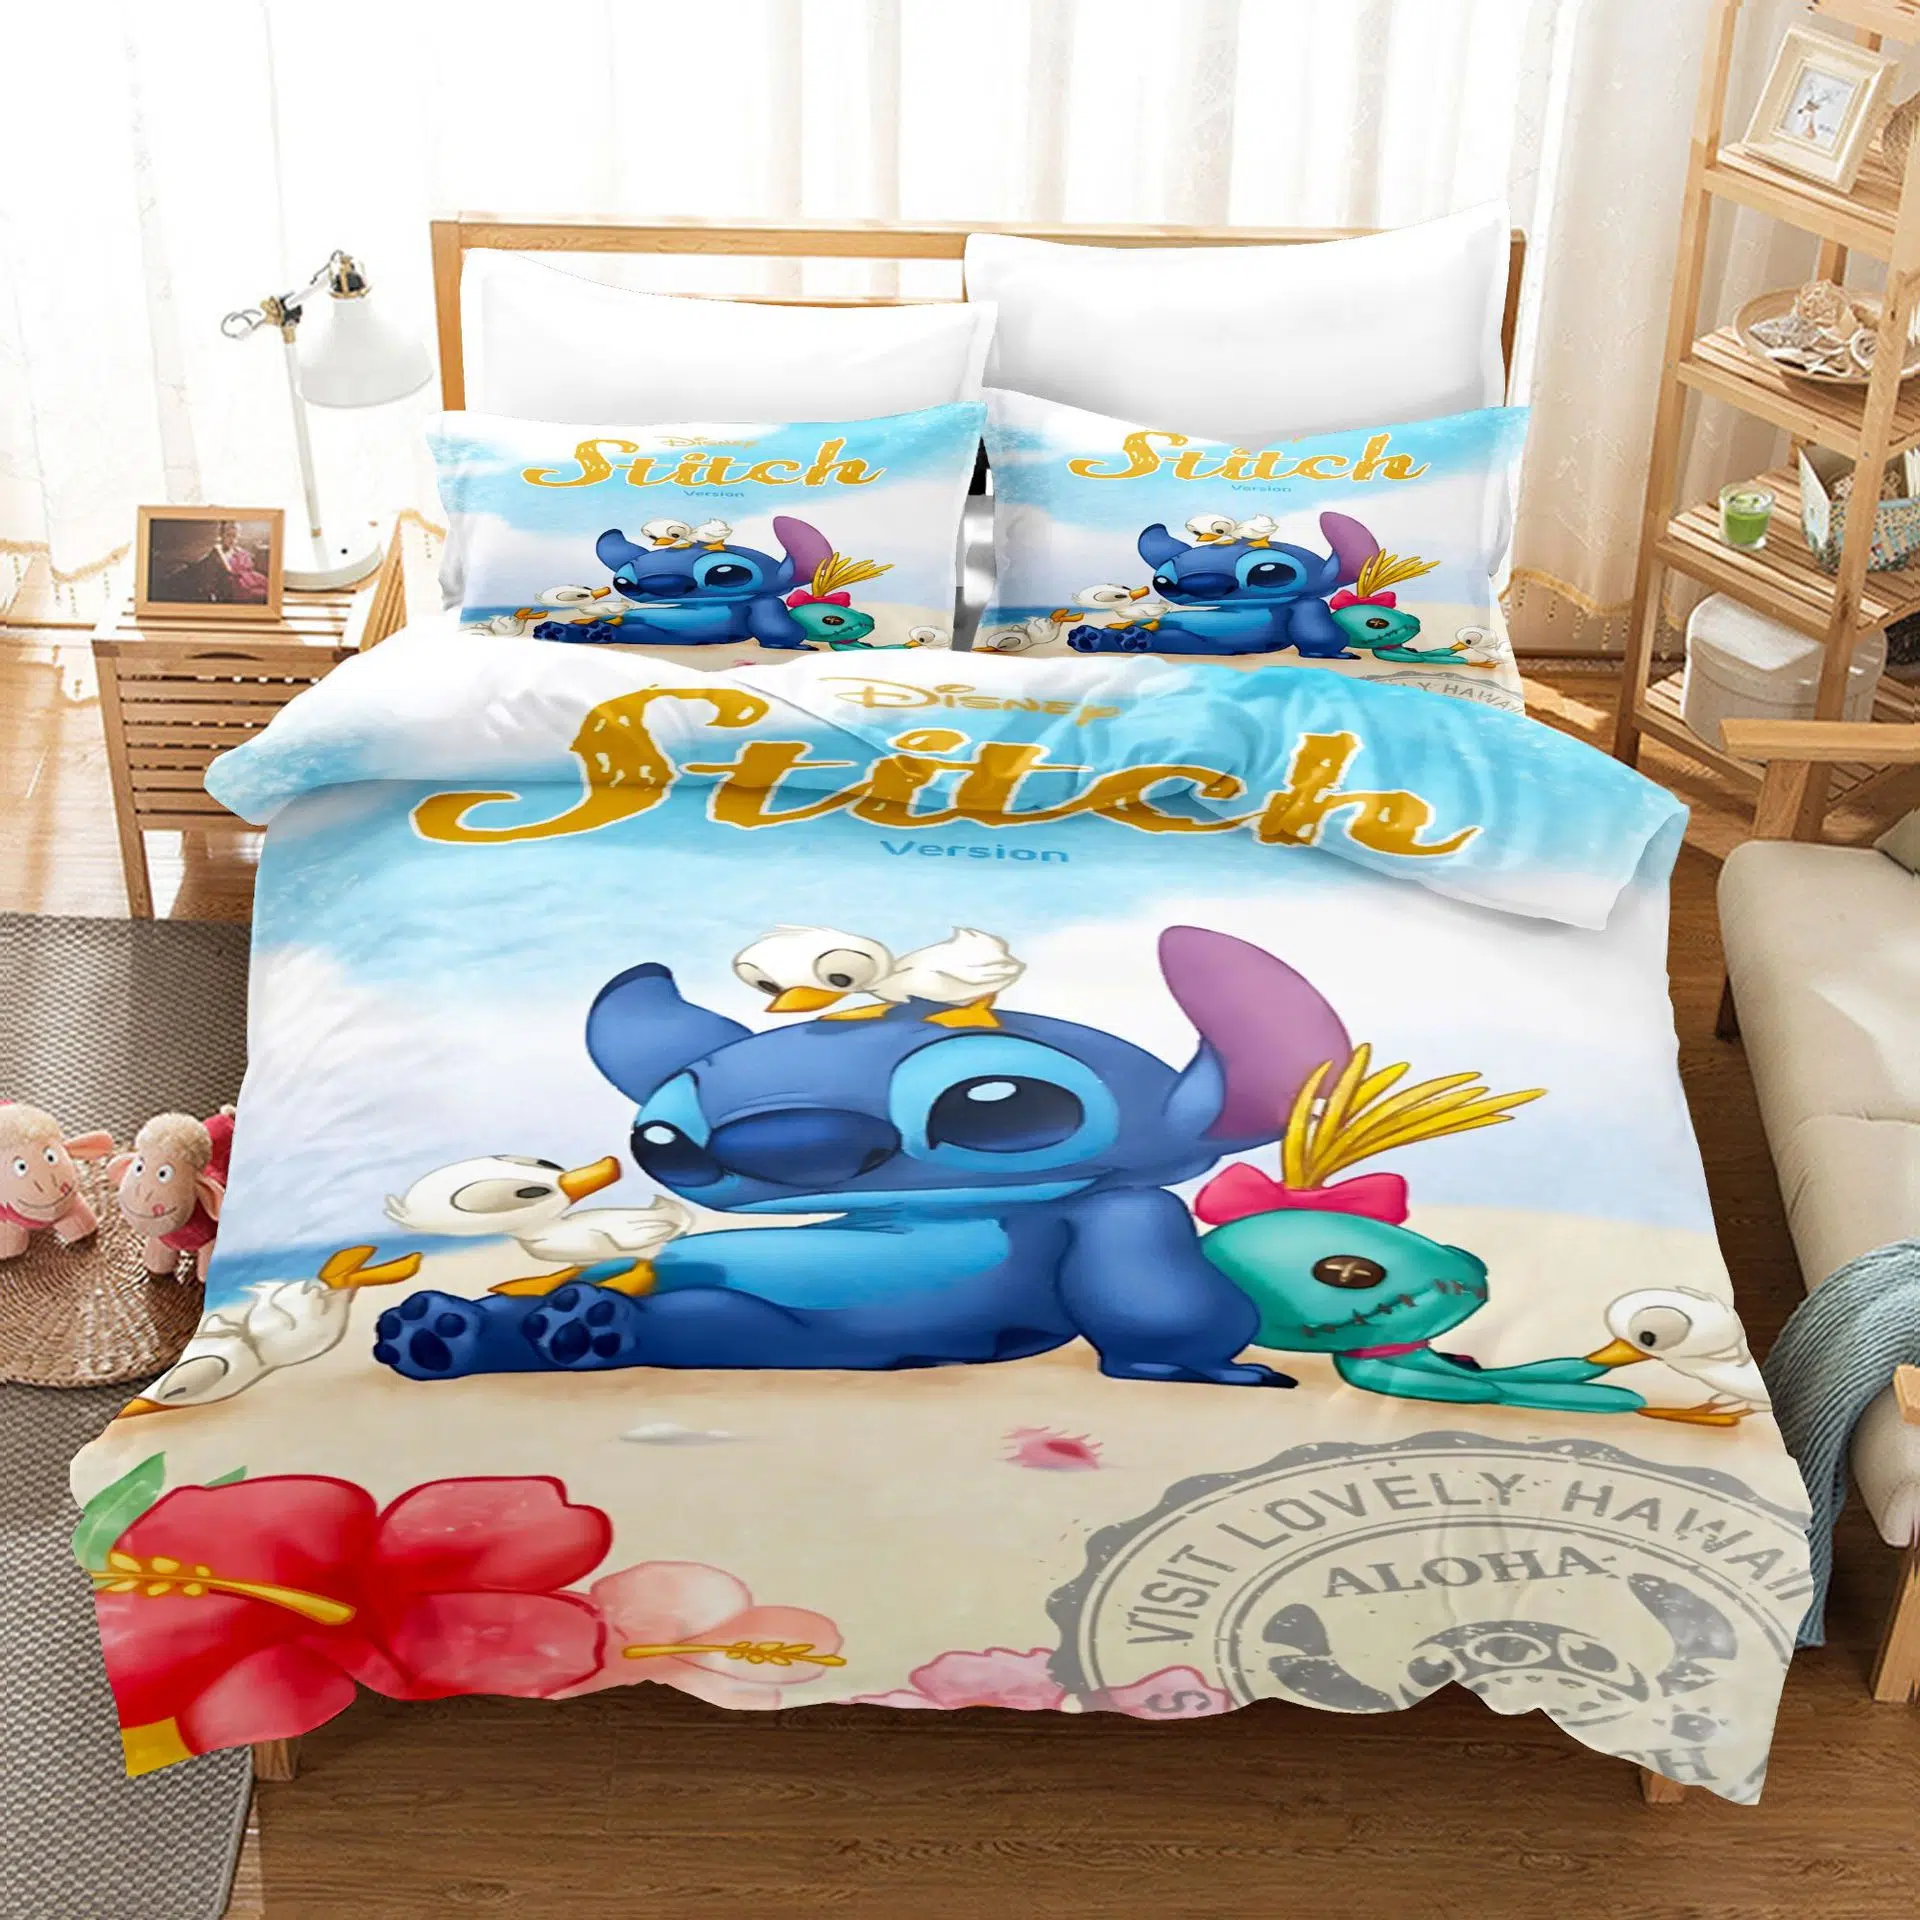 Ensemble-de-literie-Disney-Stitch-drap-taie-d-oreiller-couvre-lit-simple-ou-double-couverture-de (8)